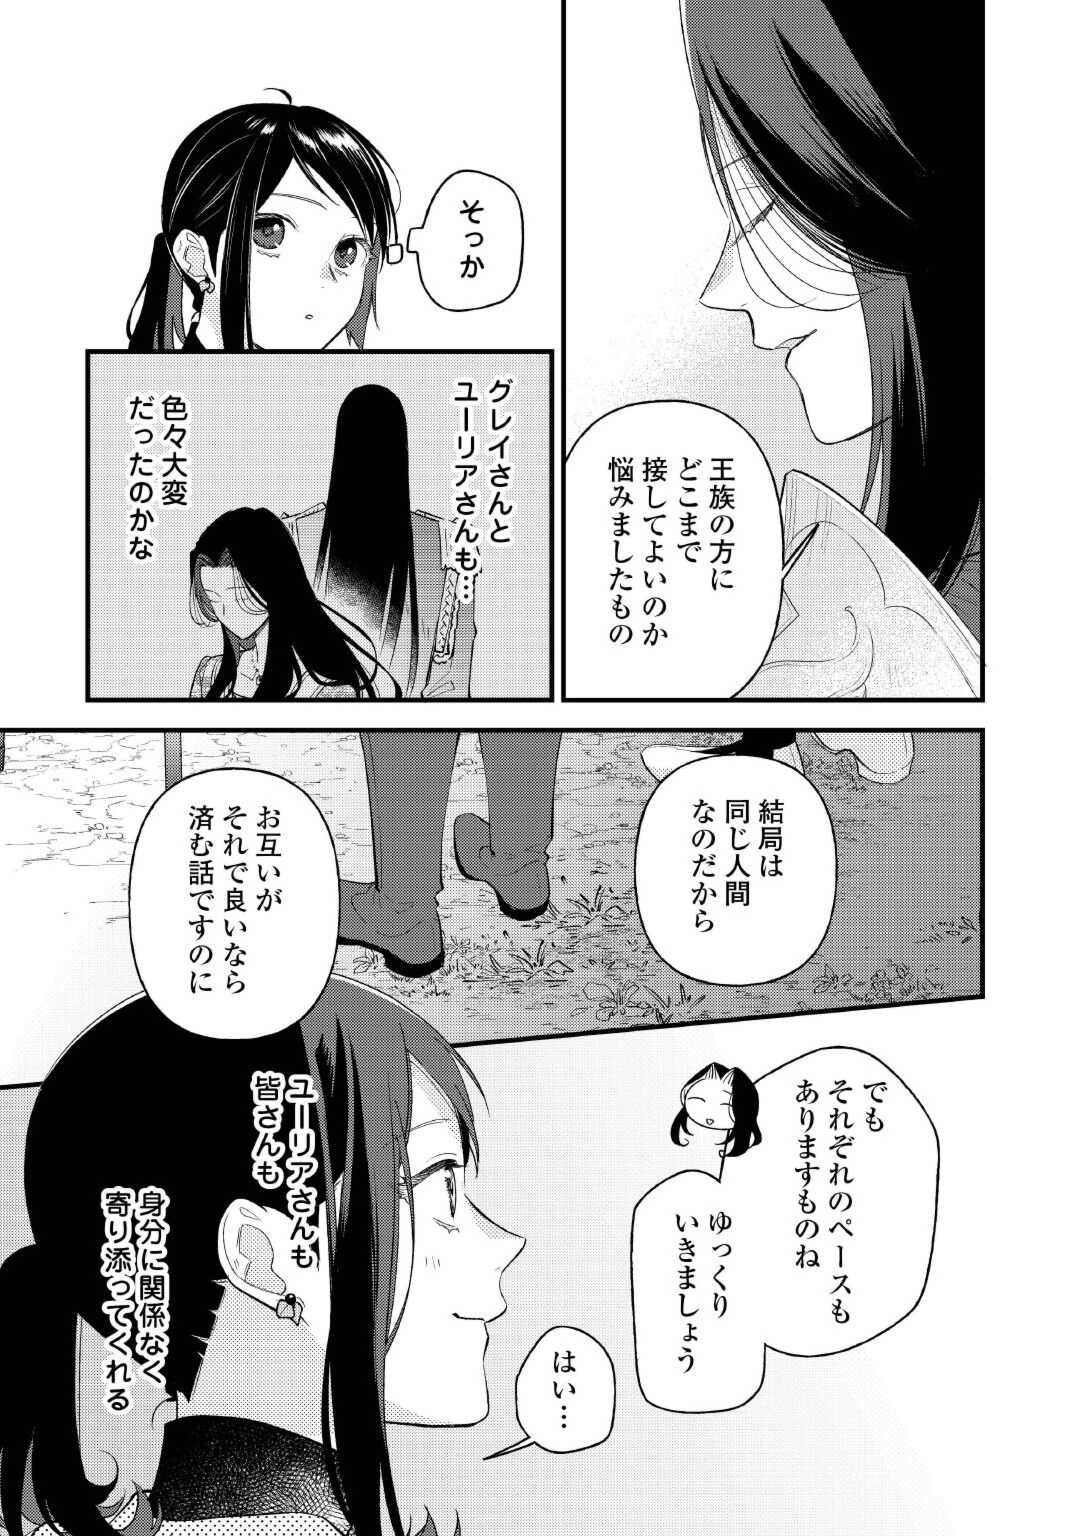 Tenisaki wa Kusushi ga Sukunai Sekai Deshita - Chapter 28.2 - Page 2